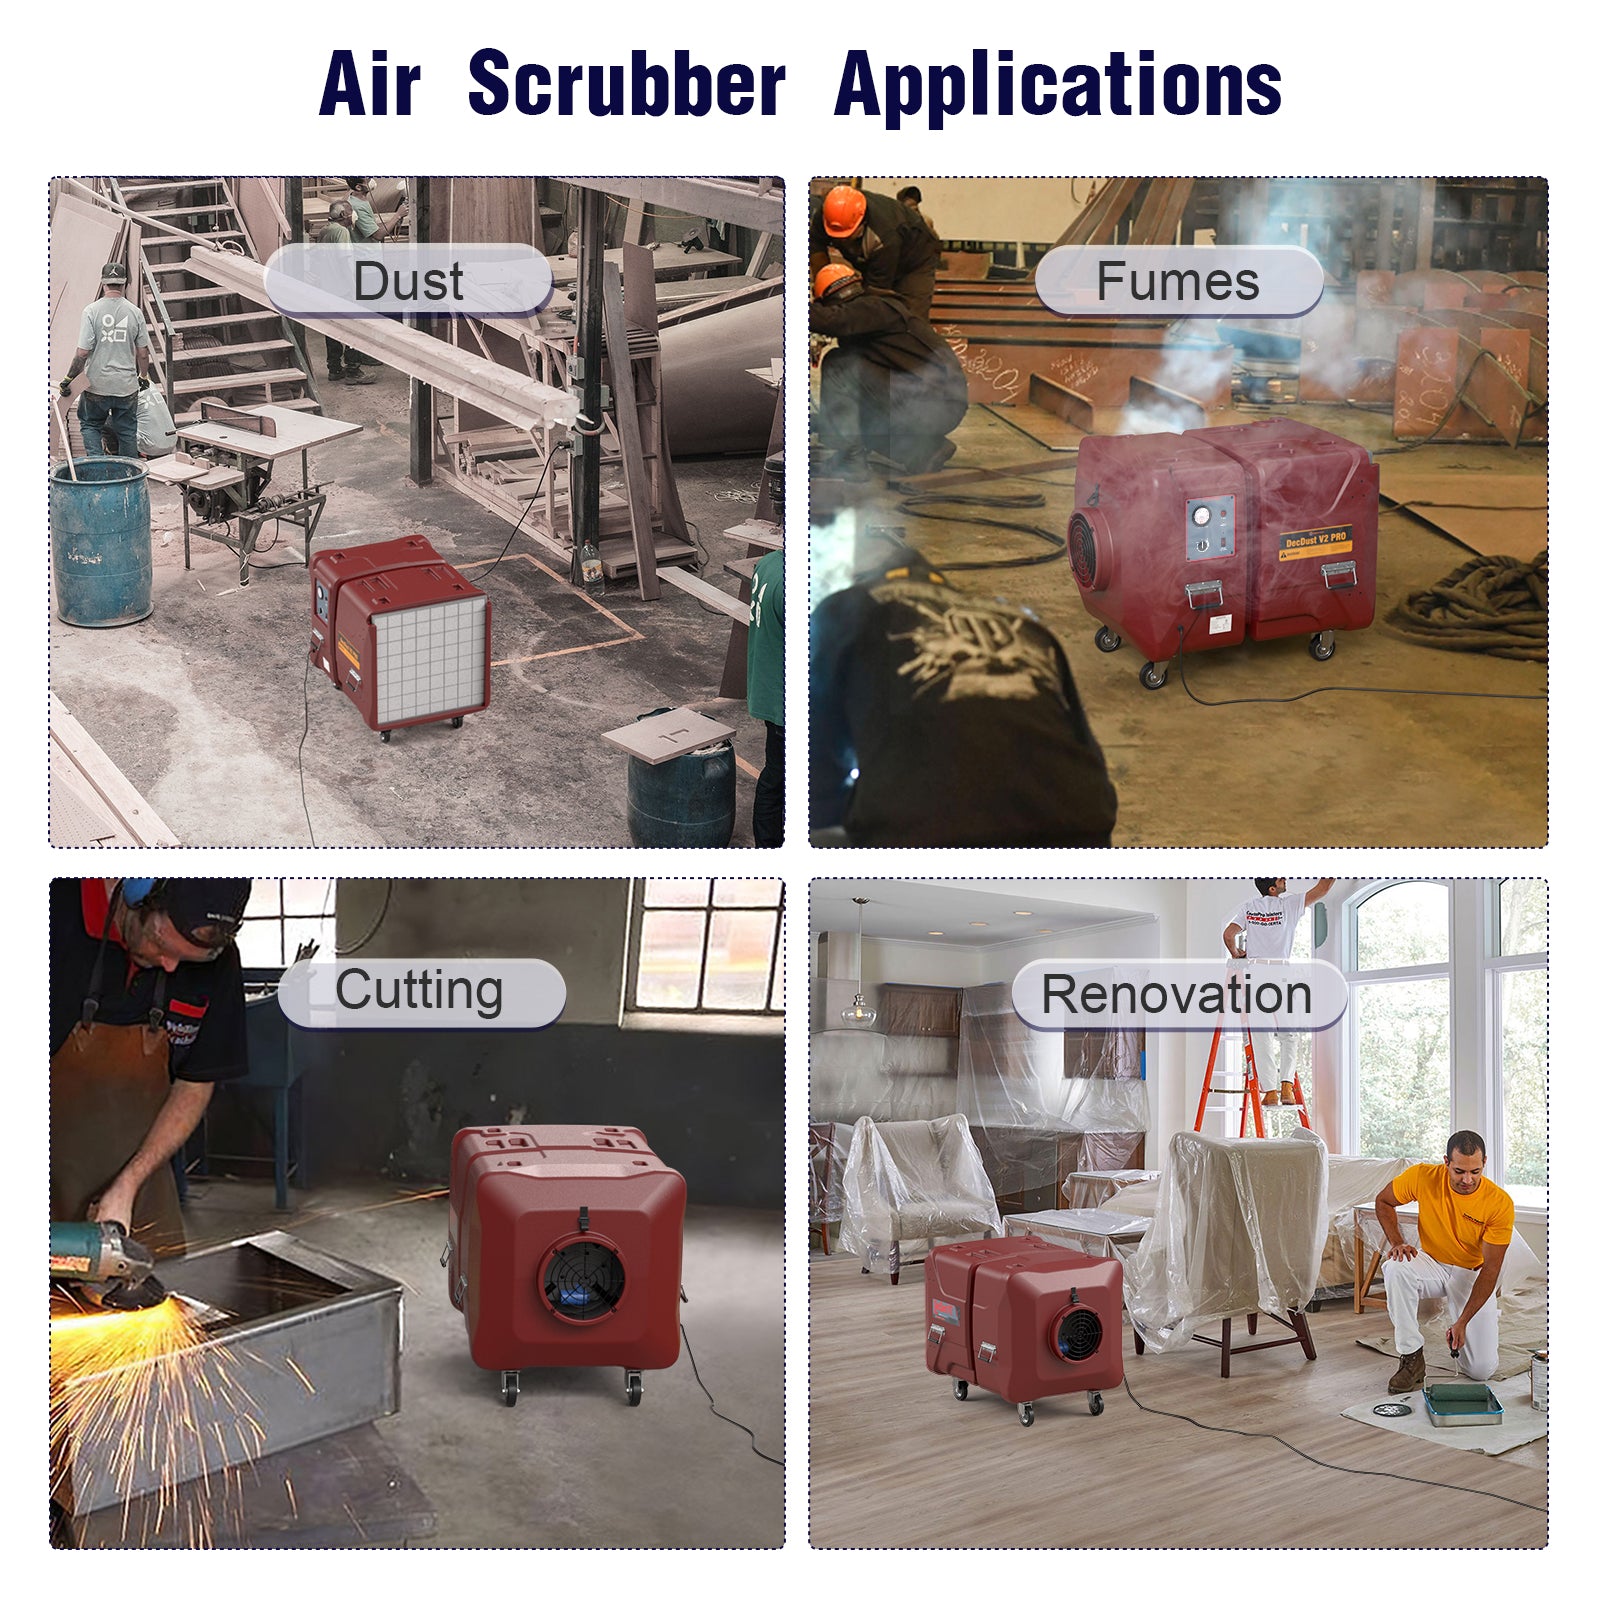 Abestorm 2000 CFM Commercial Air Scrubber |  DecDust V2 Pro